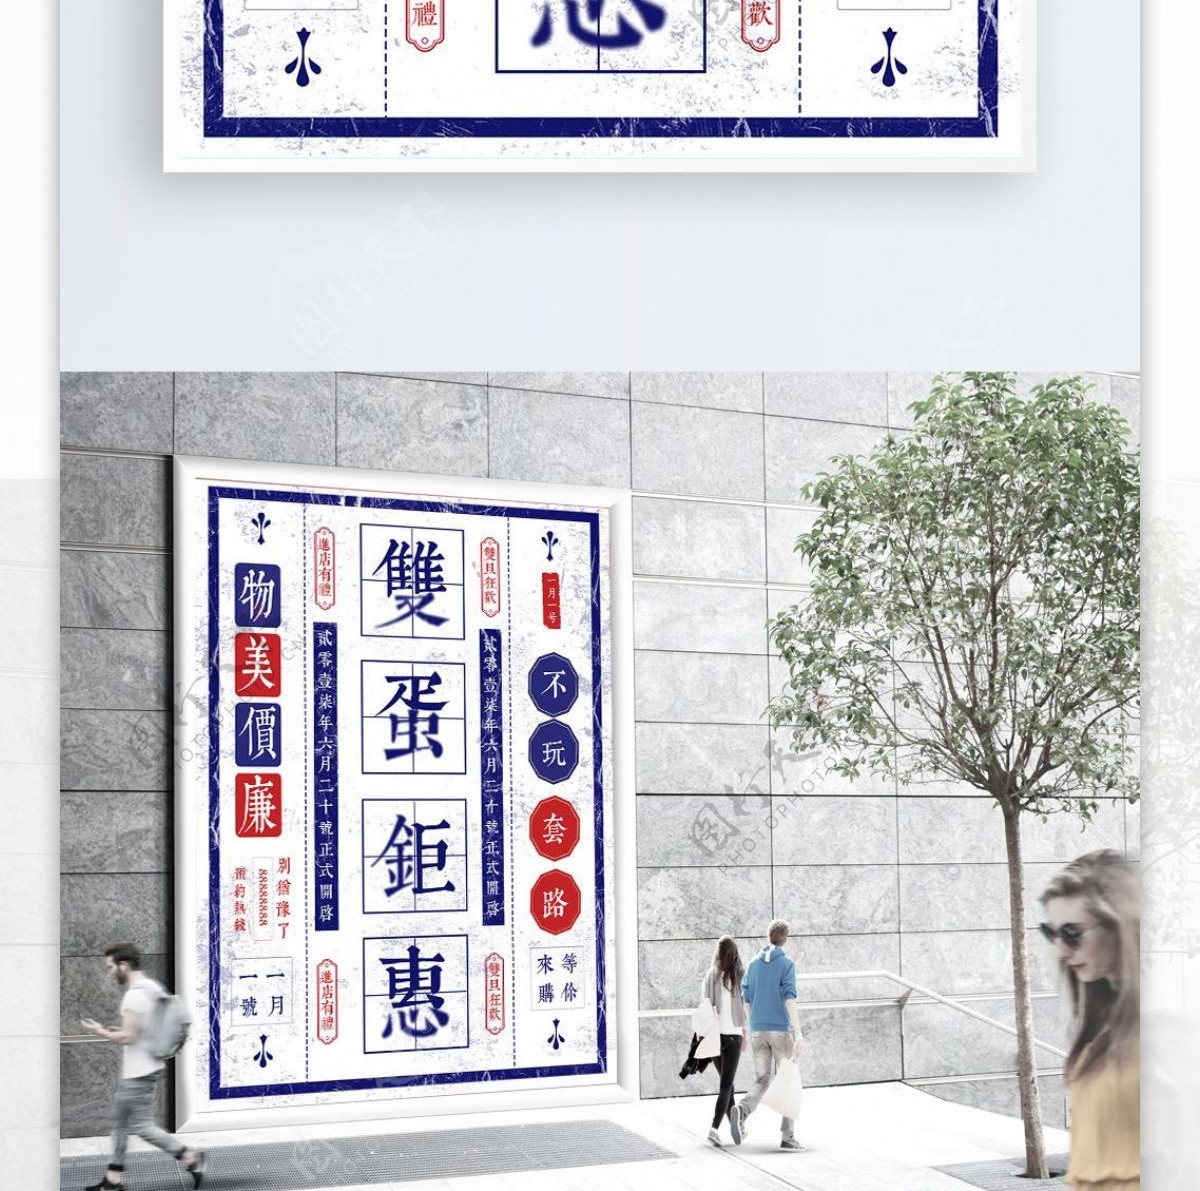 复古民国风简约双旦节日促销海报设计模板